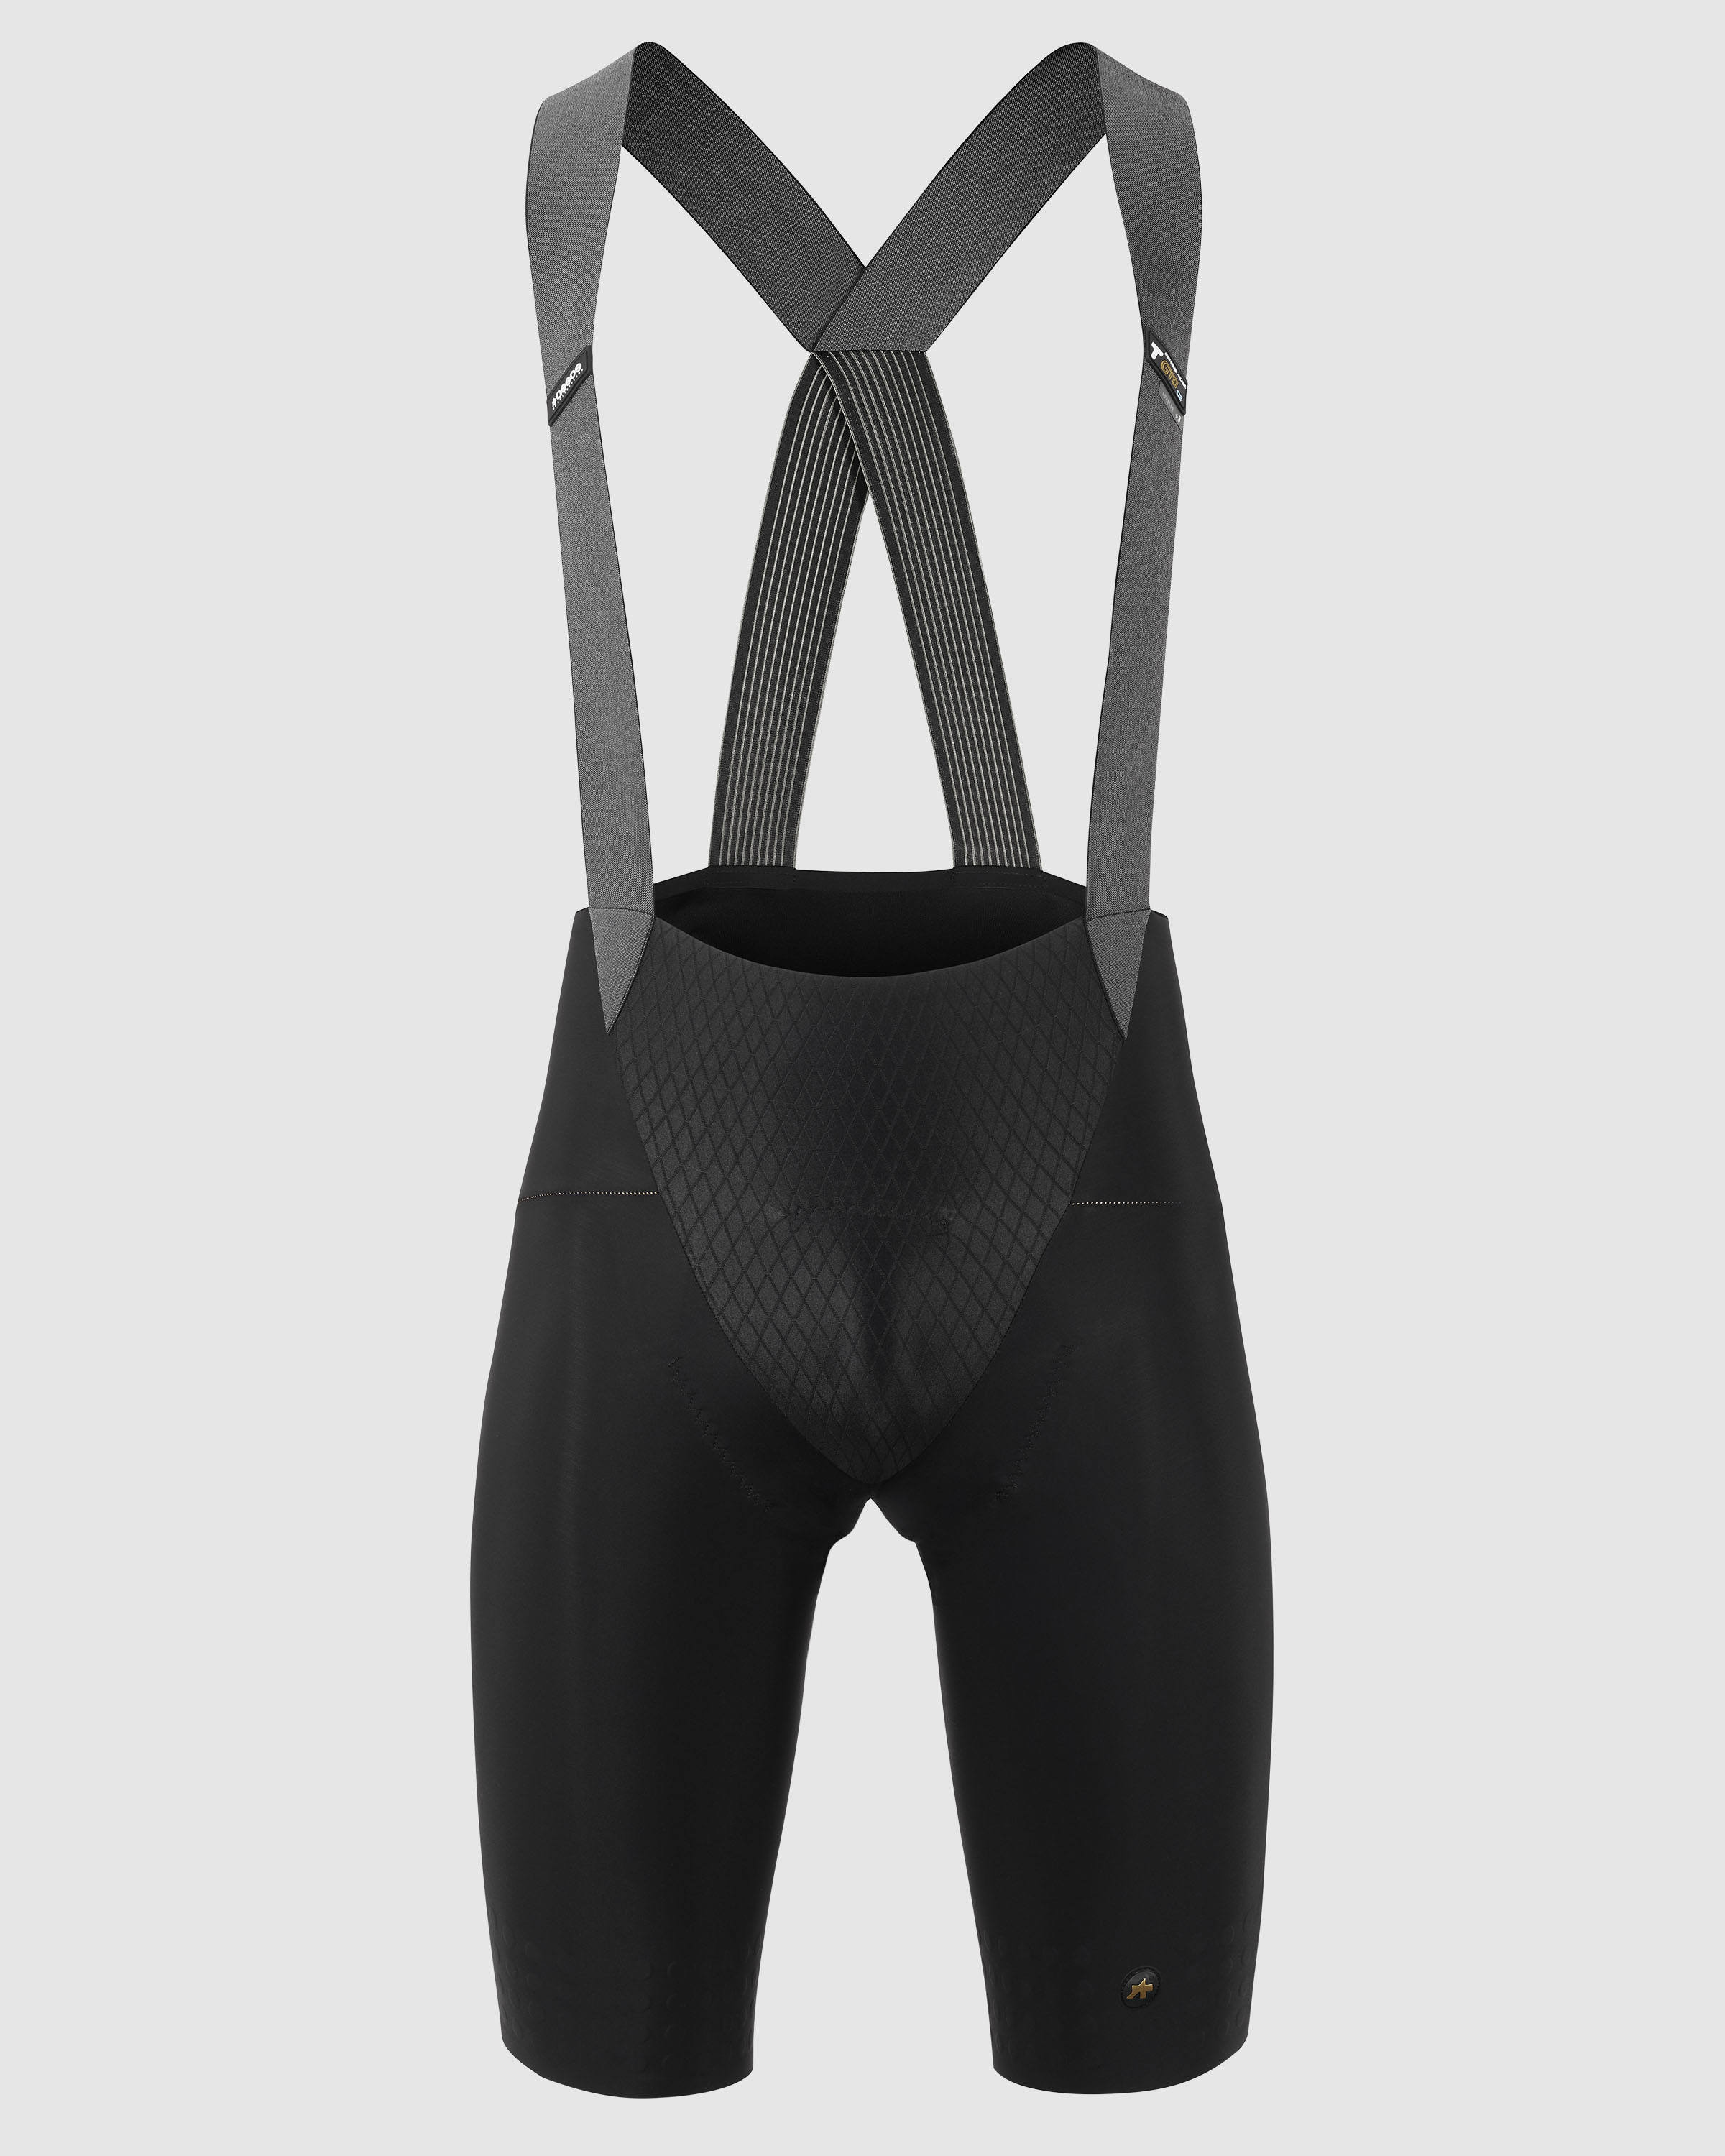 MILLE GTO Bib Shorts C2 long, blackSeries » ASSOS Of Switzerland